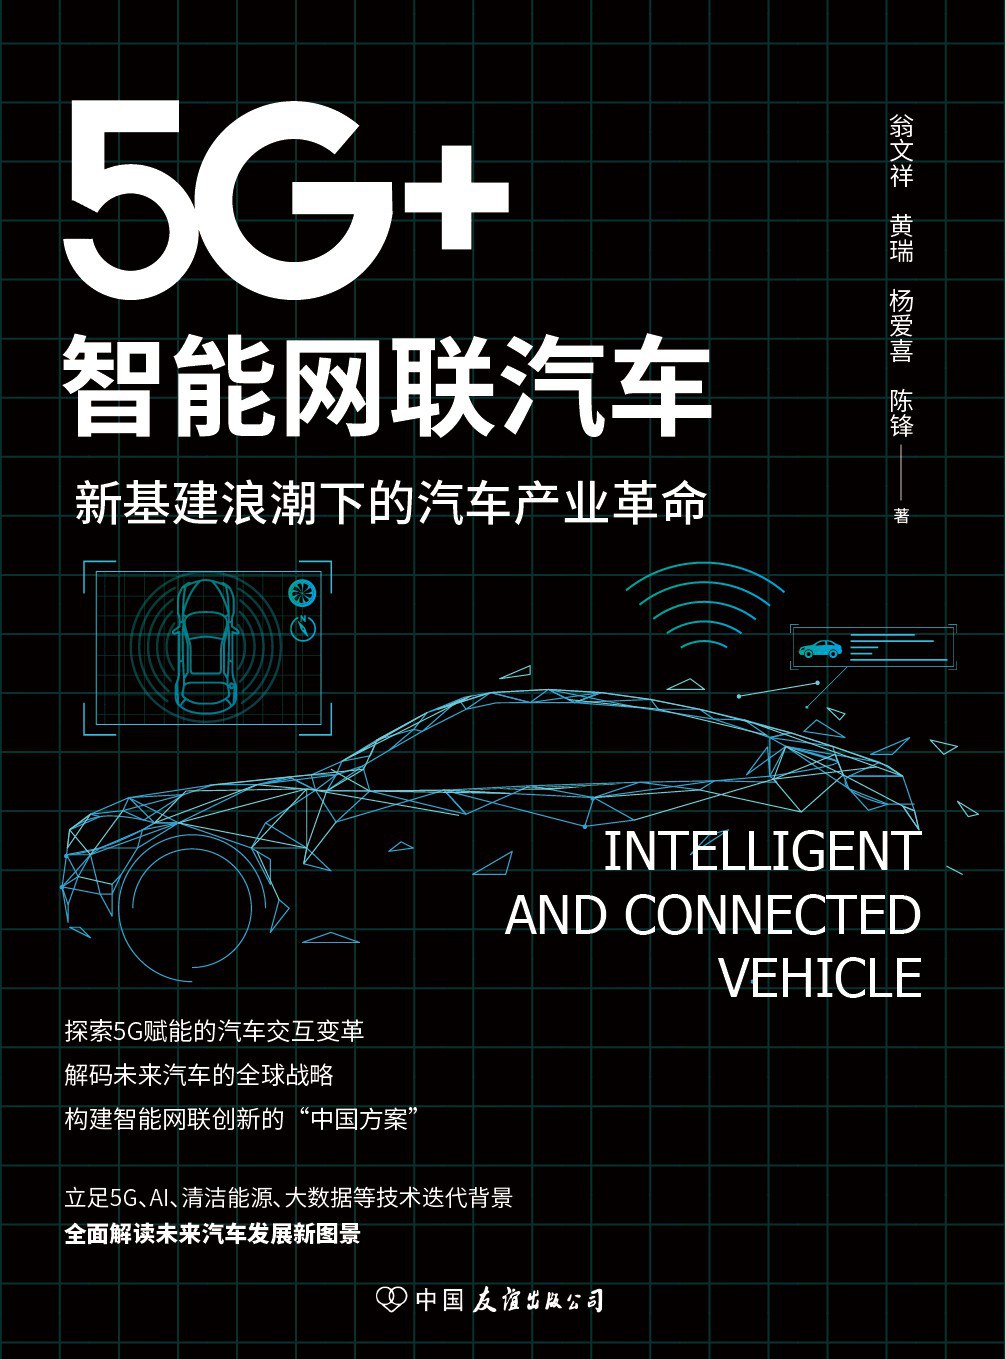 5G+智能网联汽车 新基建浪潮下的汽车产业革命